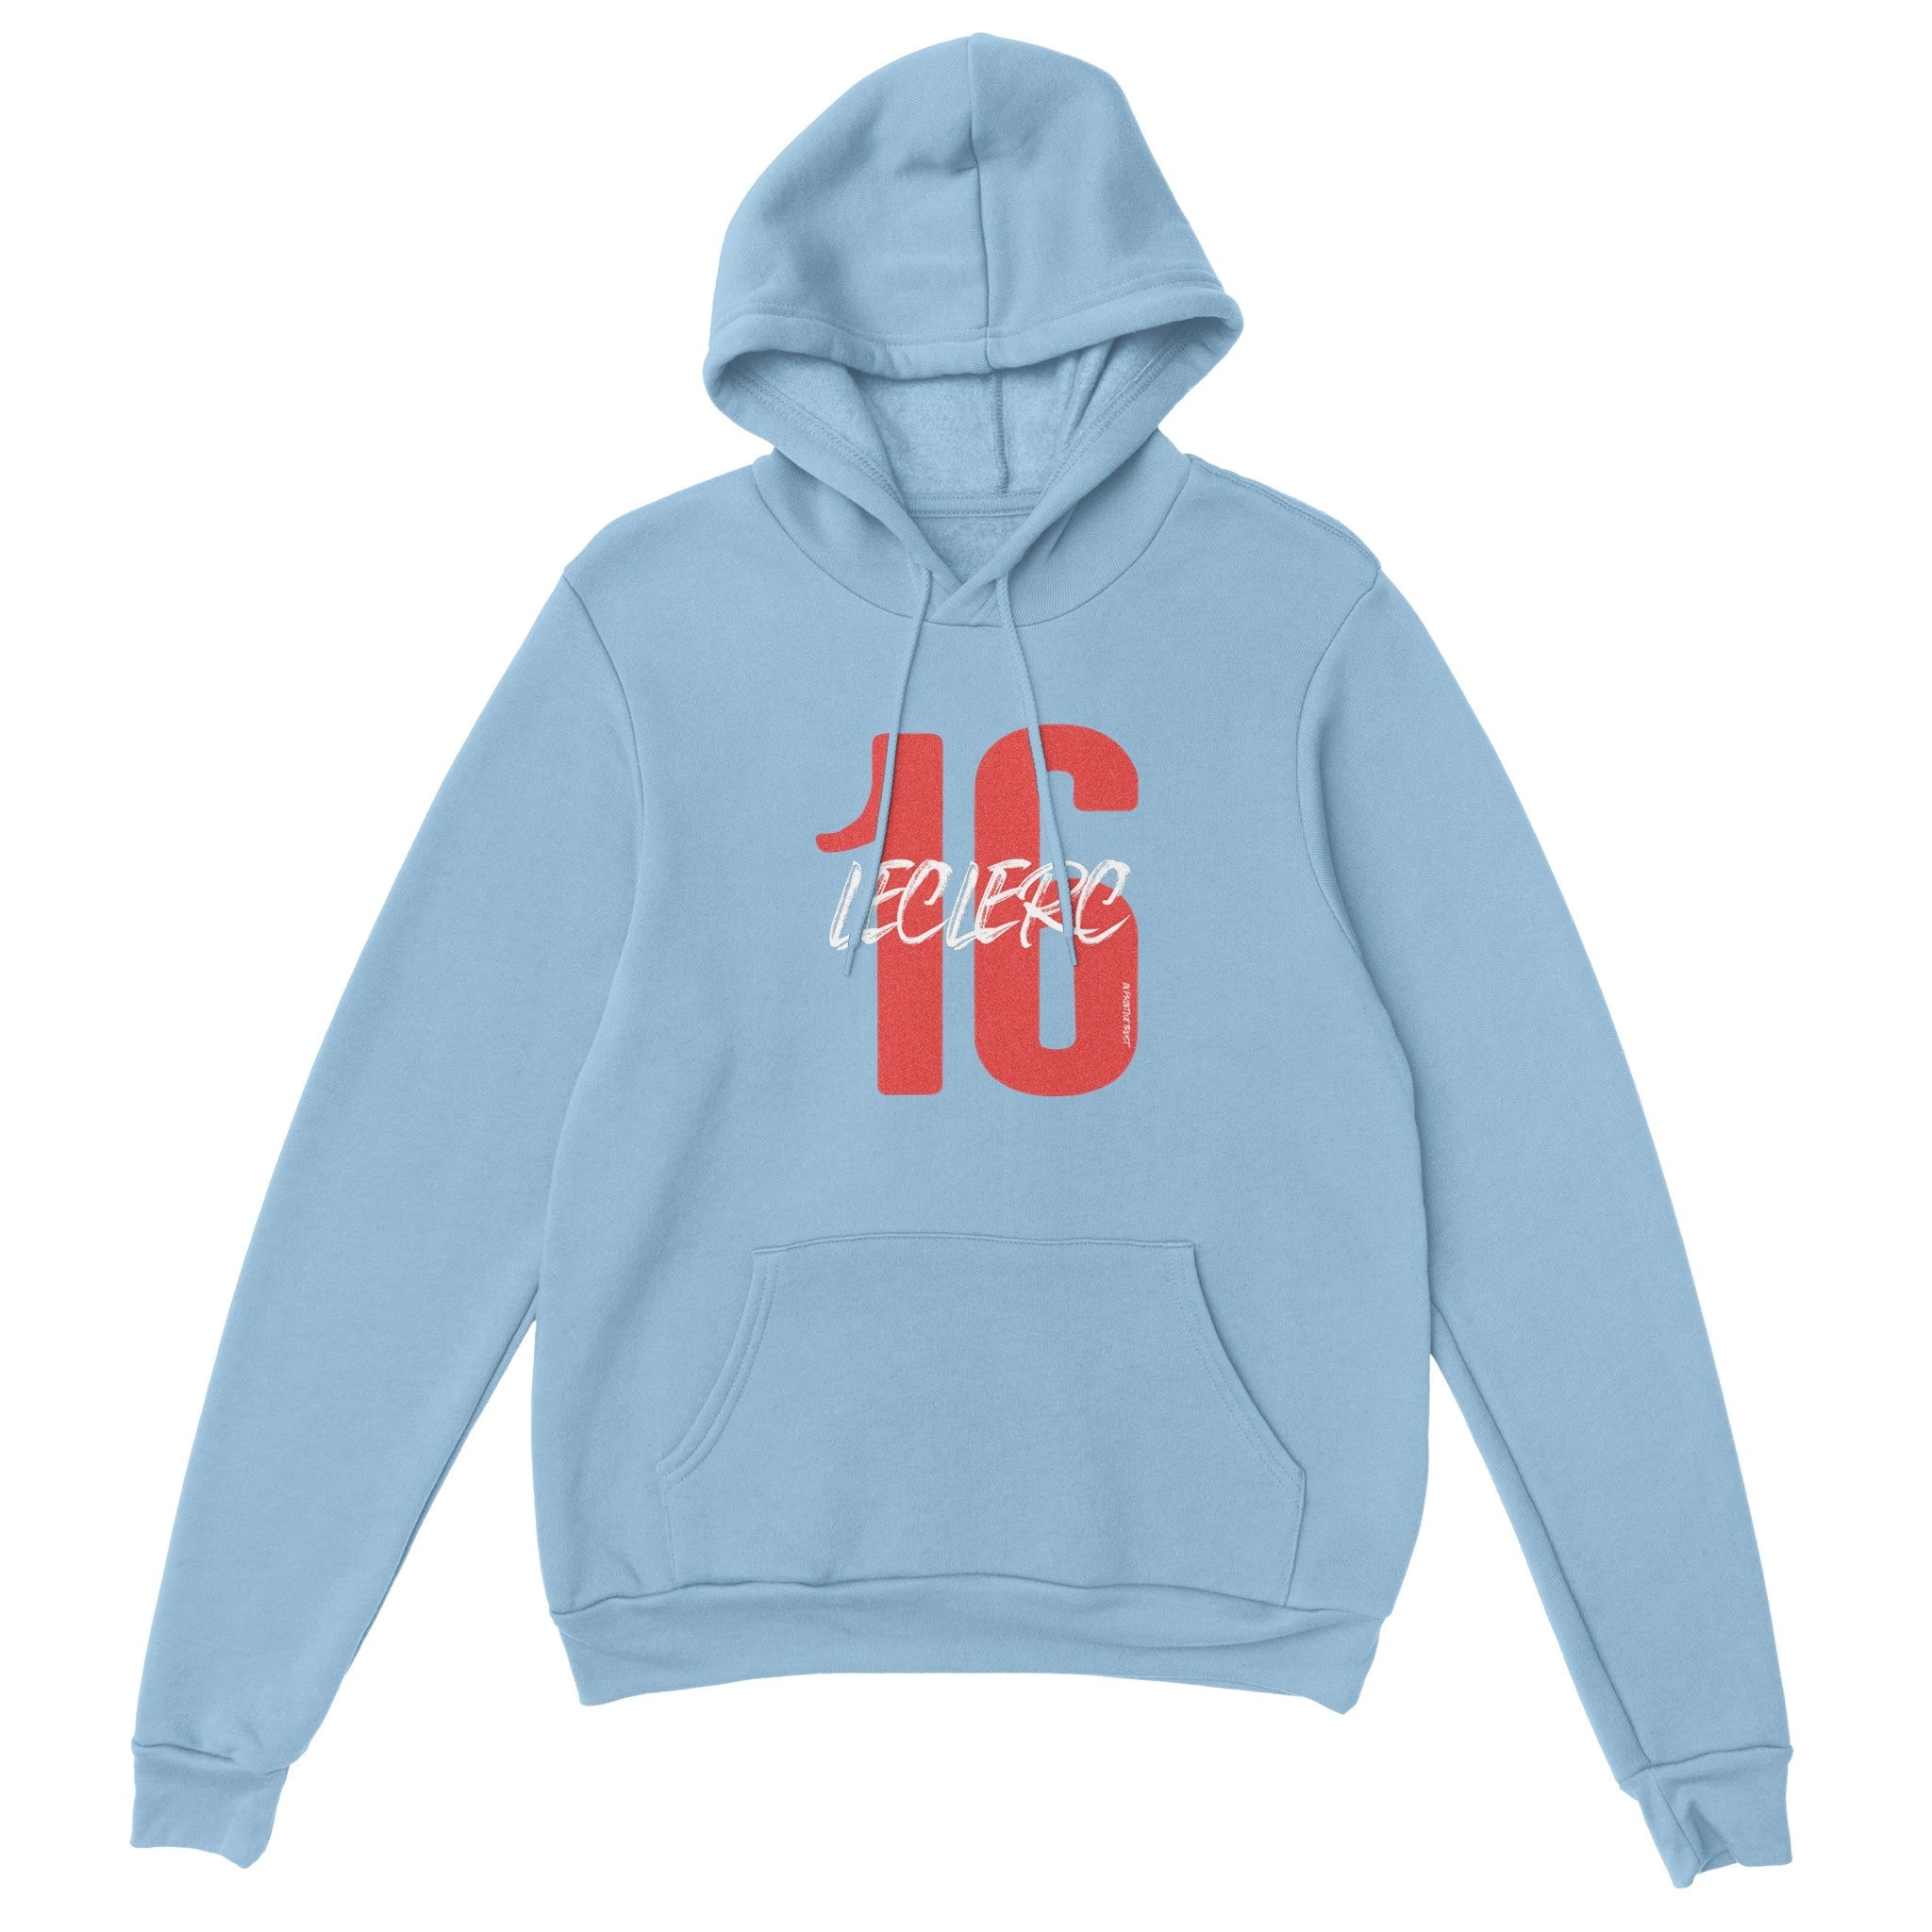 'Leclerc 16' hoodie - In Print We Trust